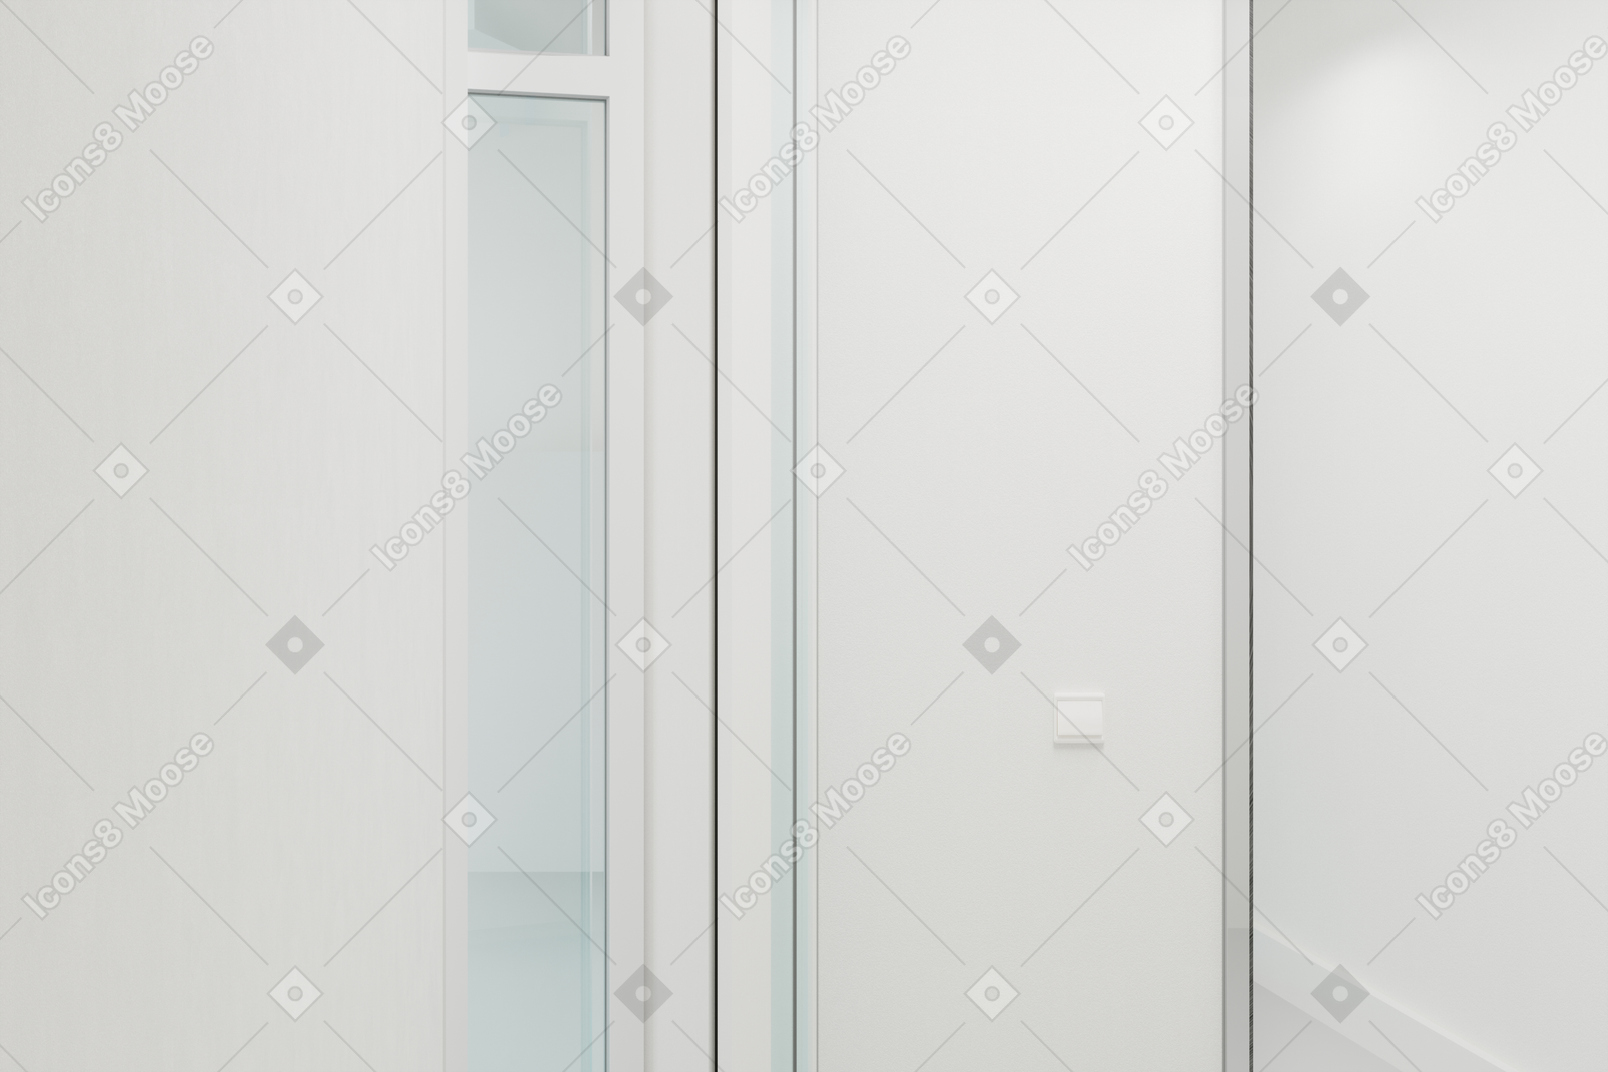 Couloir blanc avec une porte vitrée